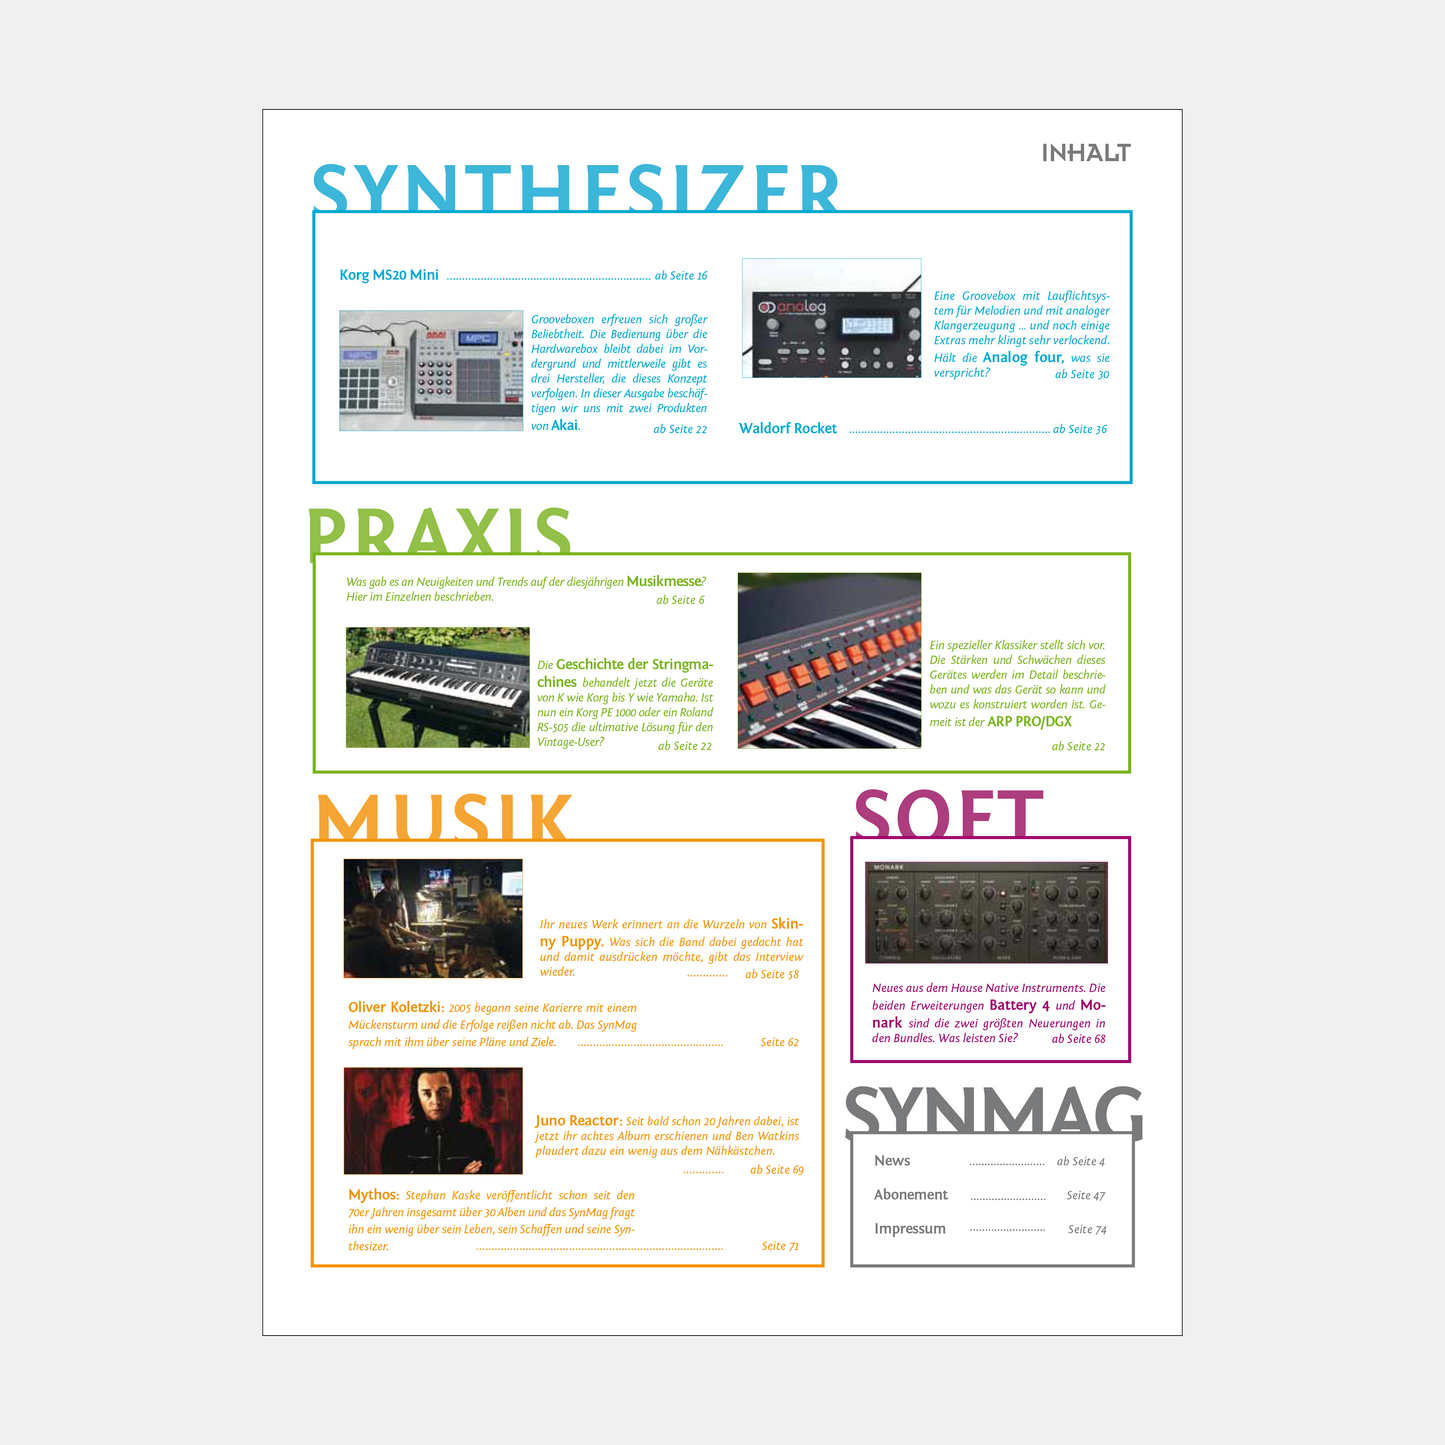 Synmag | Ausgabe 38 | Mai 2013 | ePaper